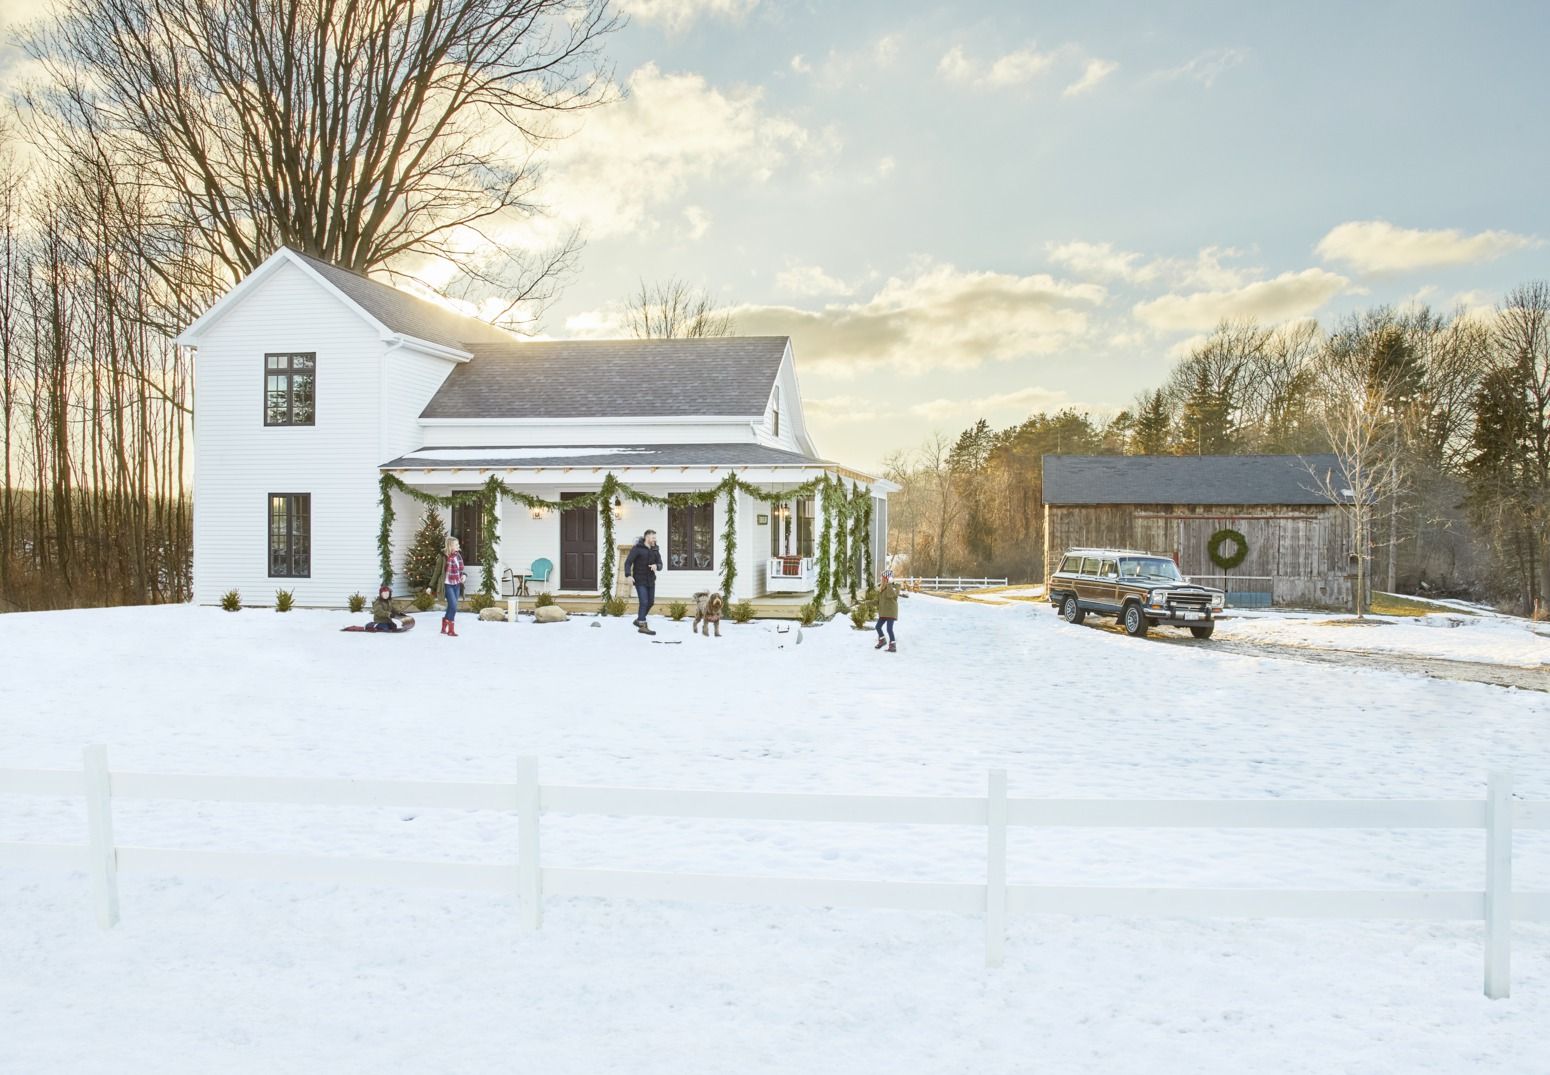 31 Farmhouse Christmas Decorating Ideas - Diy Holiday Decorating Ideas From  Your Farmhouse